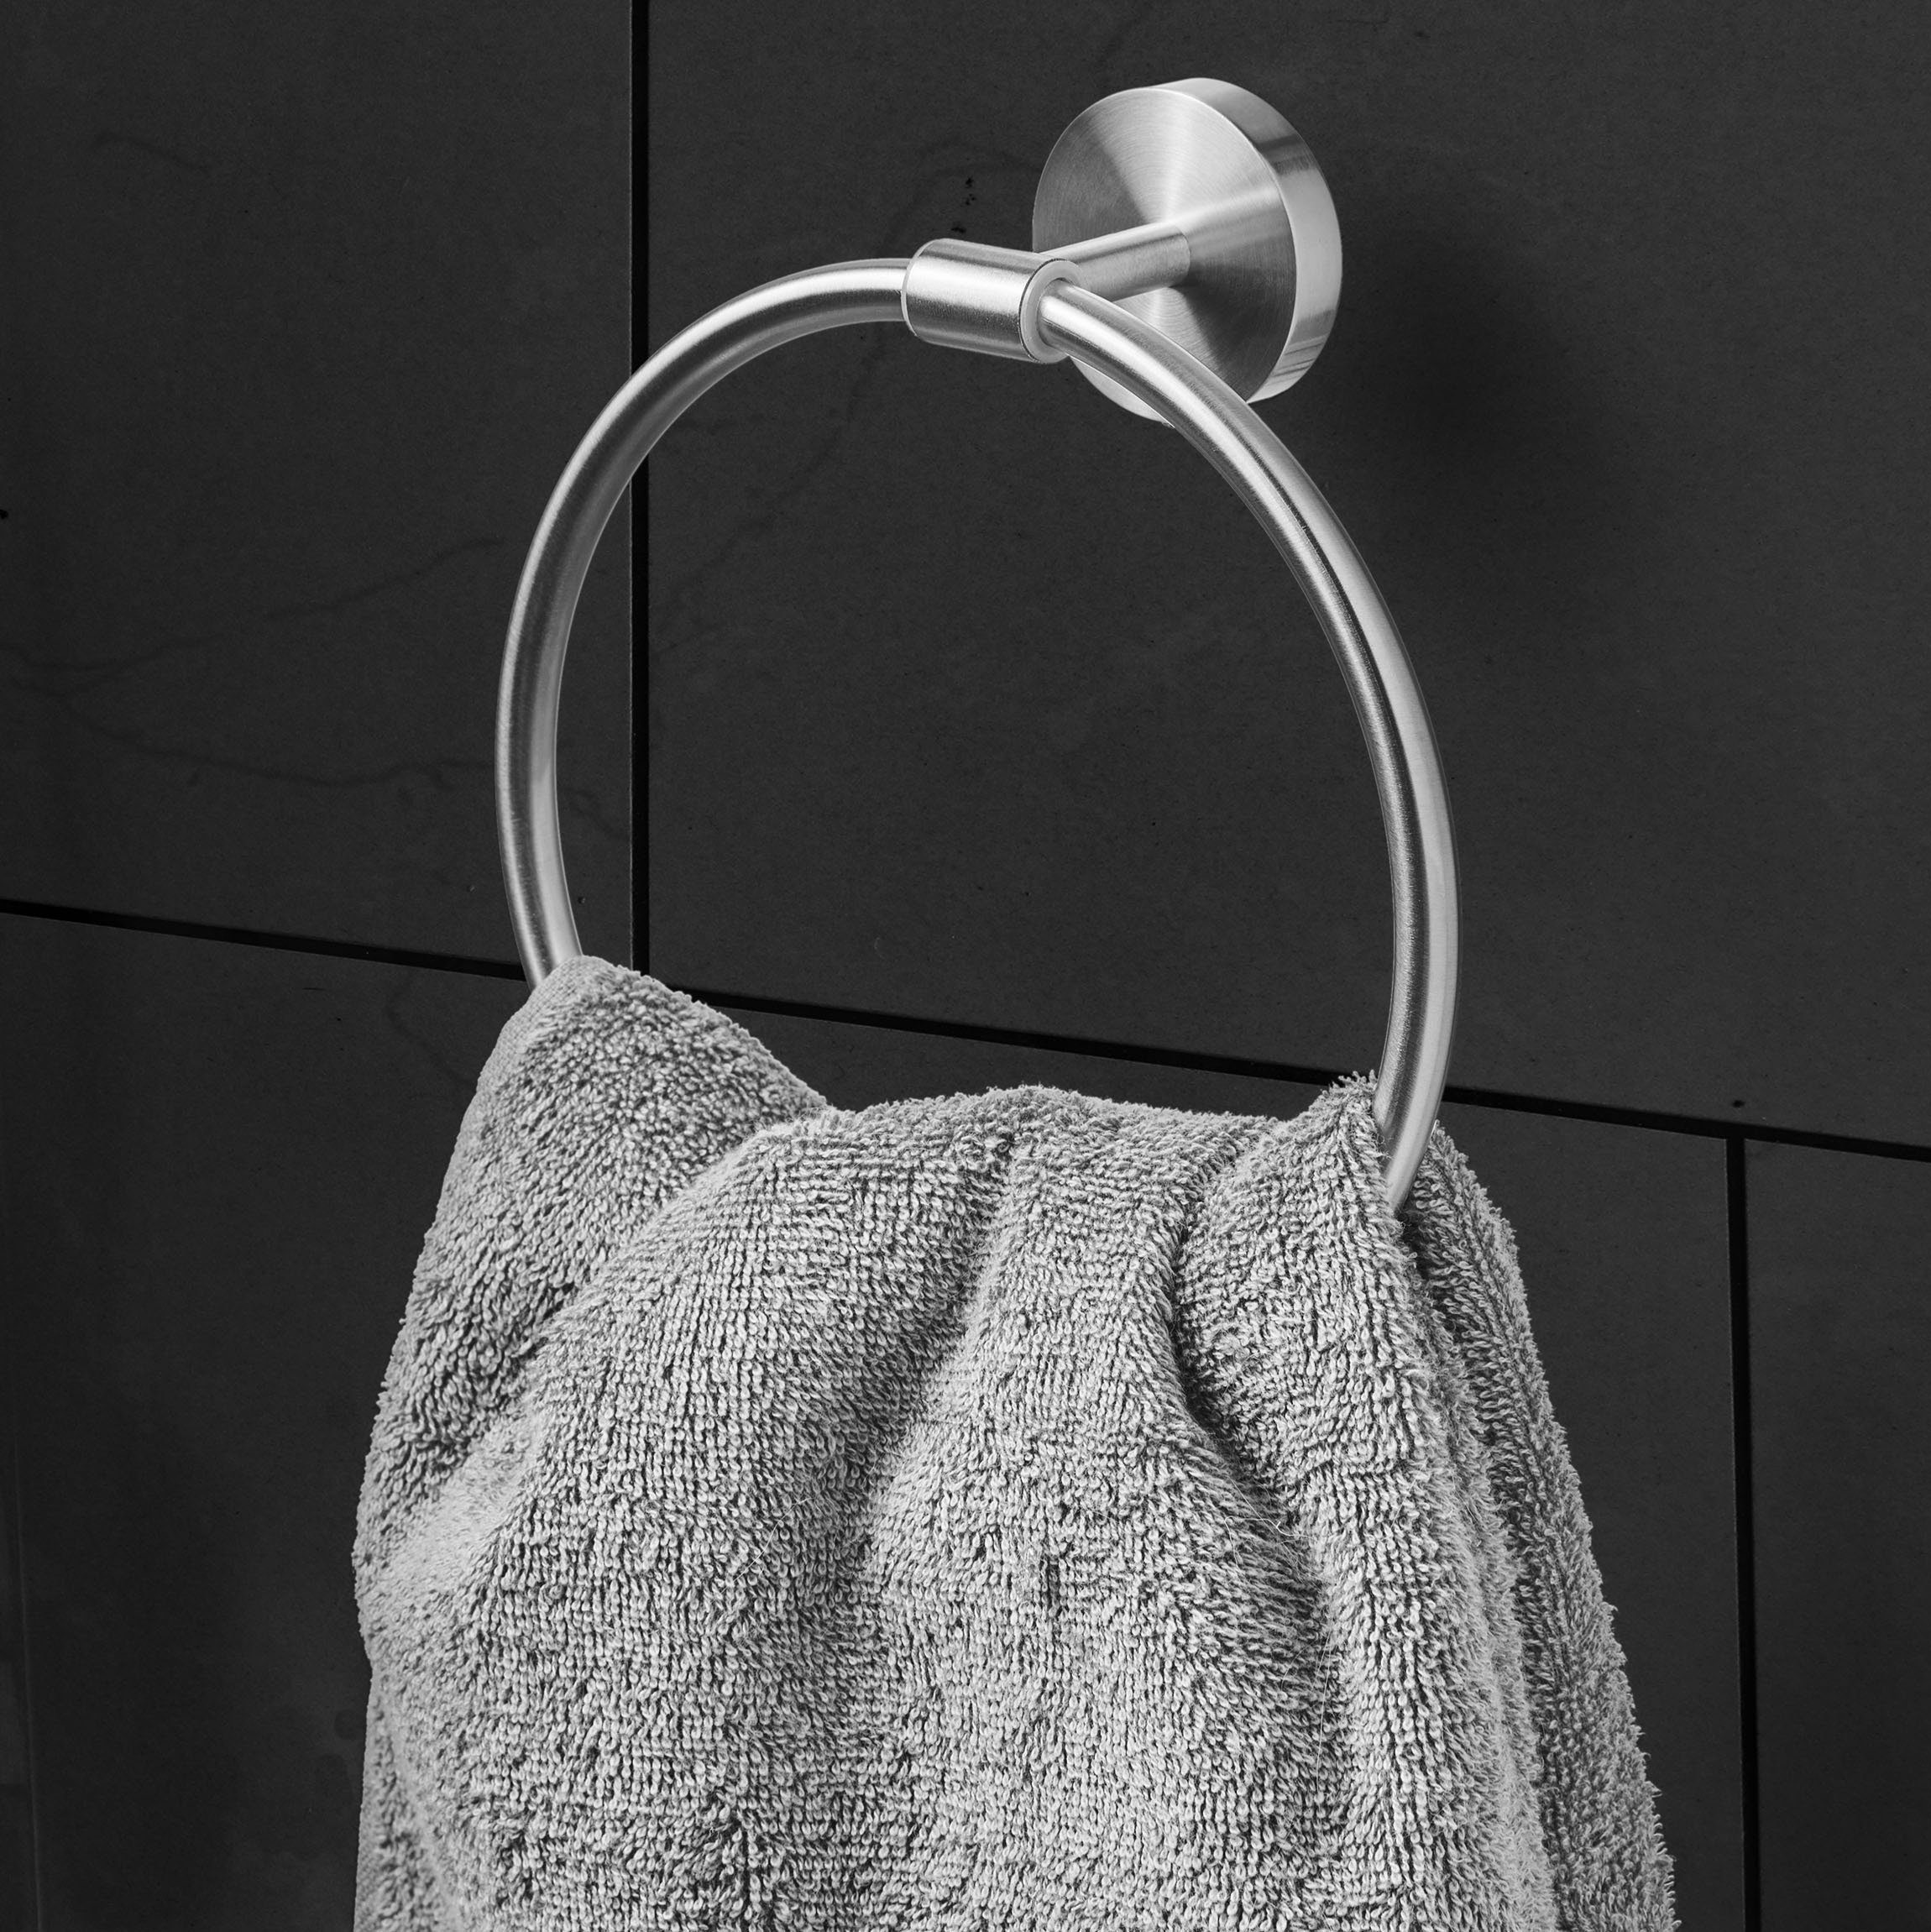 Luxus Handtuchring Bath Amare Handtuchhalter Silber Handtuchring